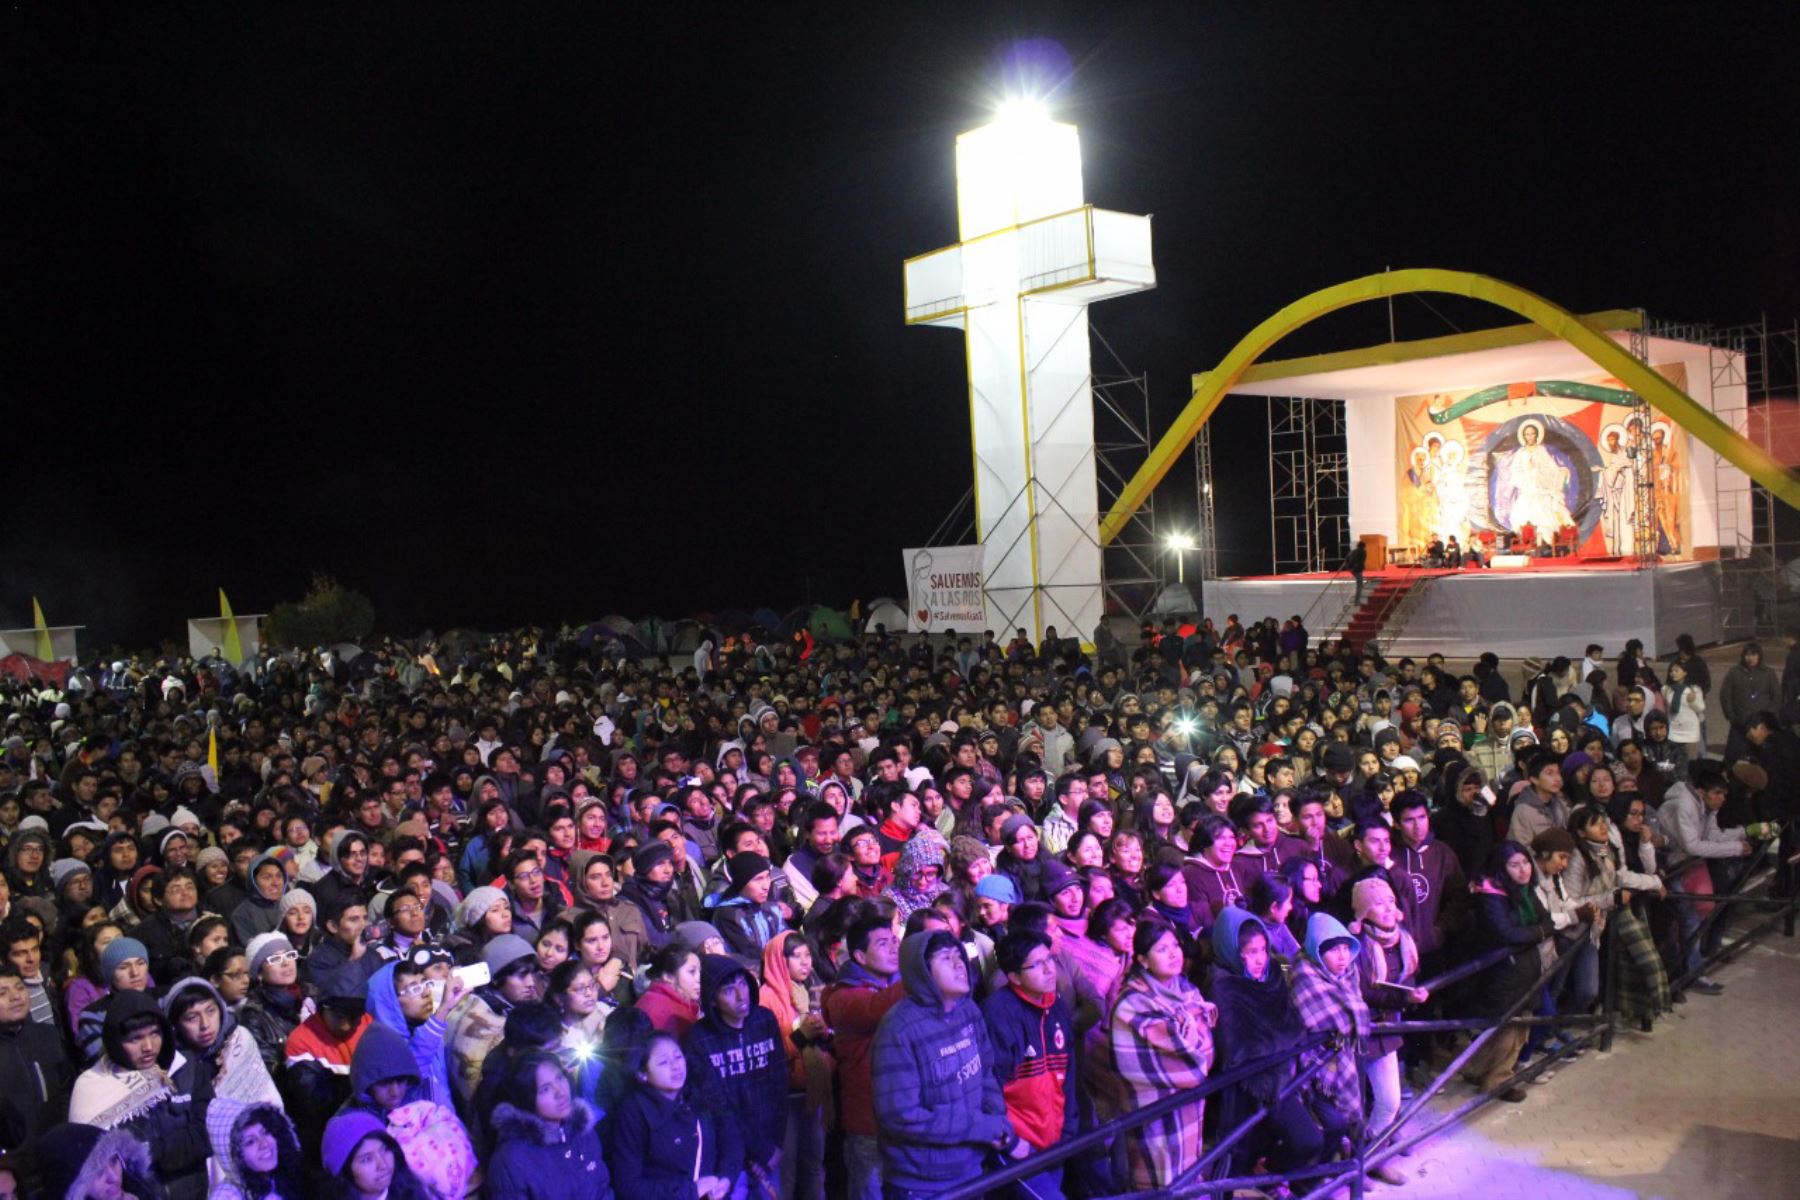 El Santuario de la Virgen de Chapi, en la región Arequipa, se prepara para recibir a más de 7,000 jóvenes que participarán en la Fiesta Juvenil de la Fe este 31 de octubre.